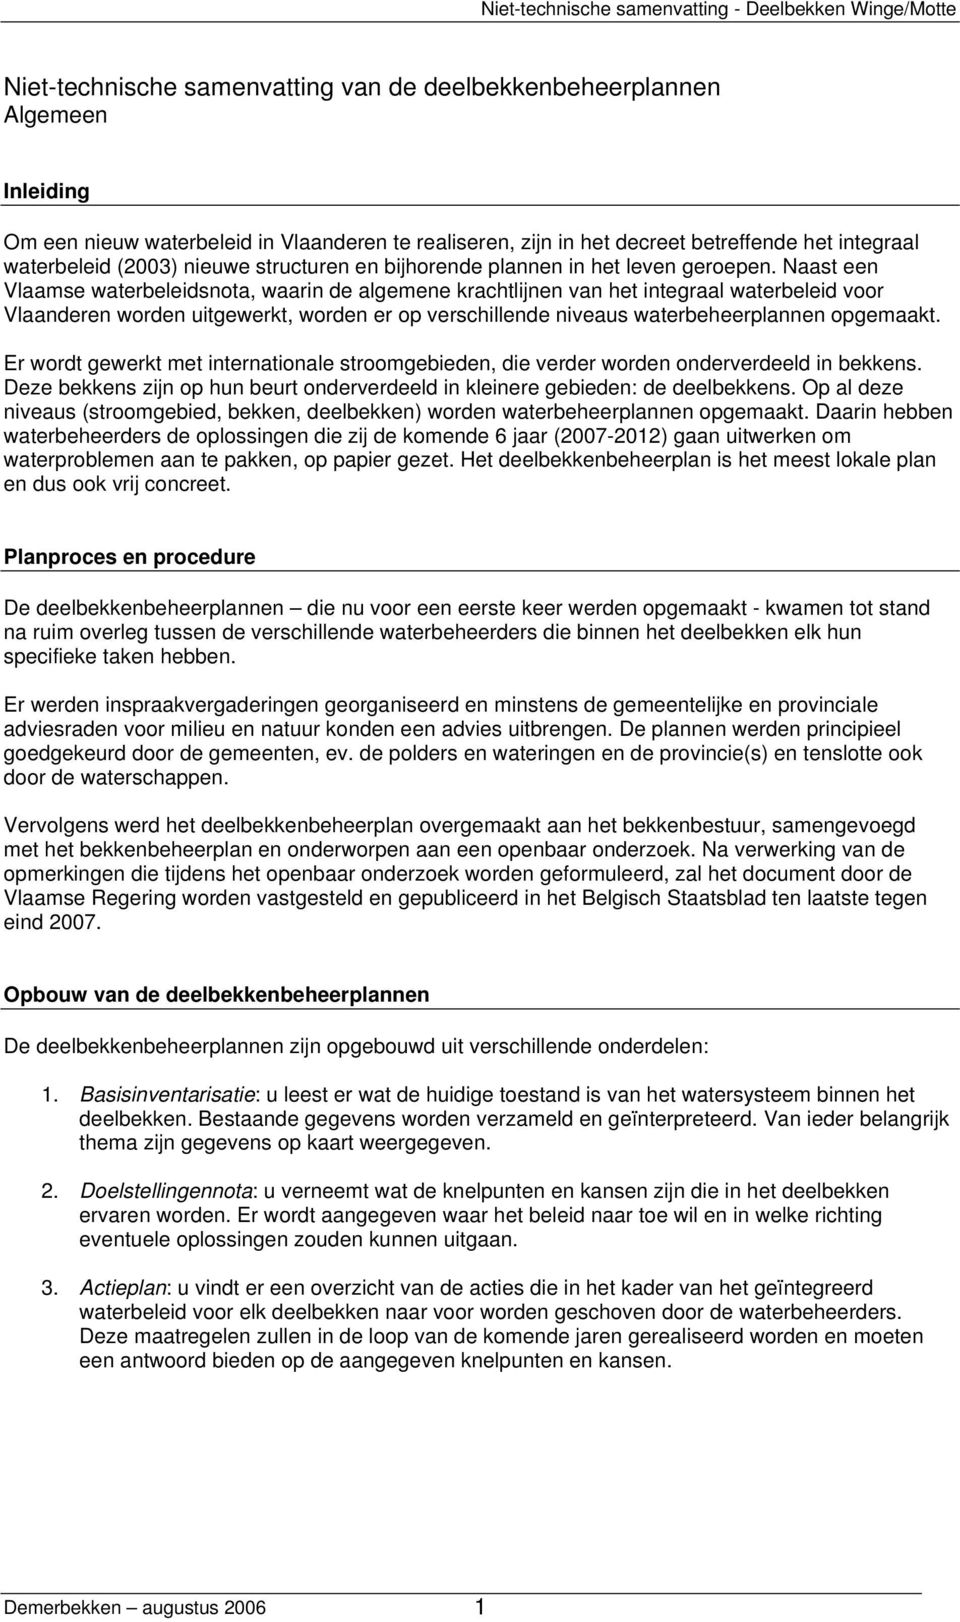 Naast een Vlaamse waterbeleidsnota, waarin de algemene krachtlijnen van het integraal waterbeleid voor Vlaanderen worden uitgewerkt, worden er op verschillende niveaus waterbeheerplannen opgemaakt.